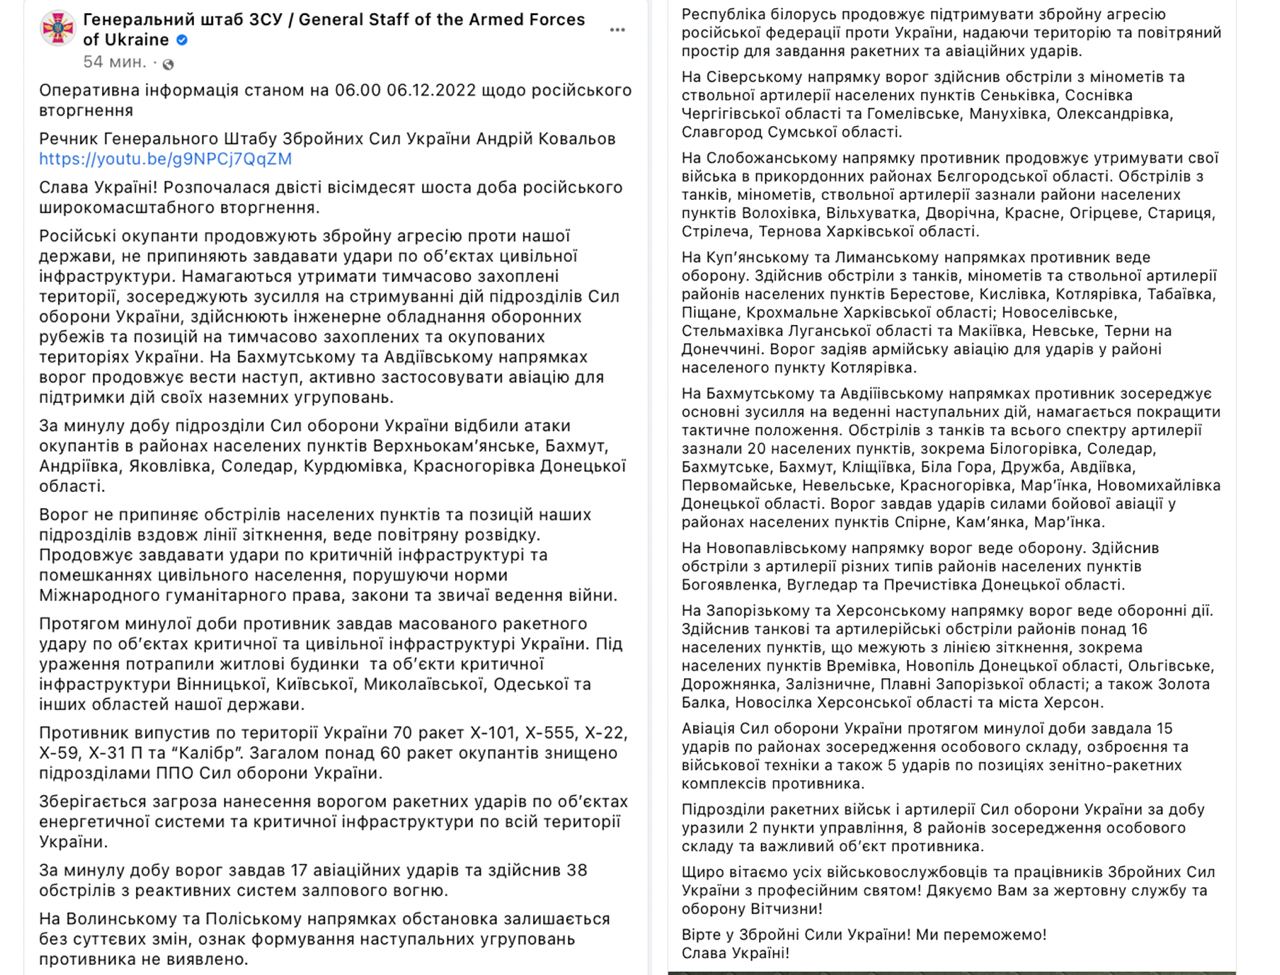 Начались 286 сутки широкомасштабного вторжения РФ в Украину